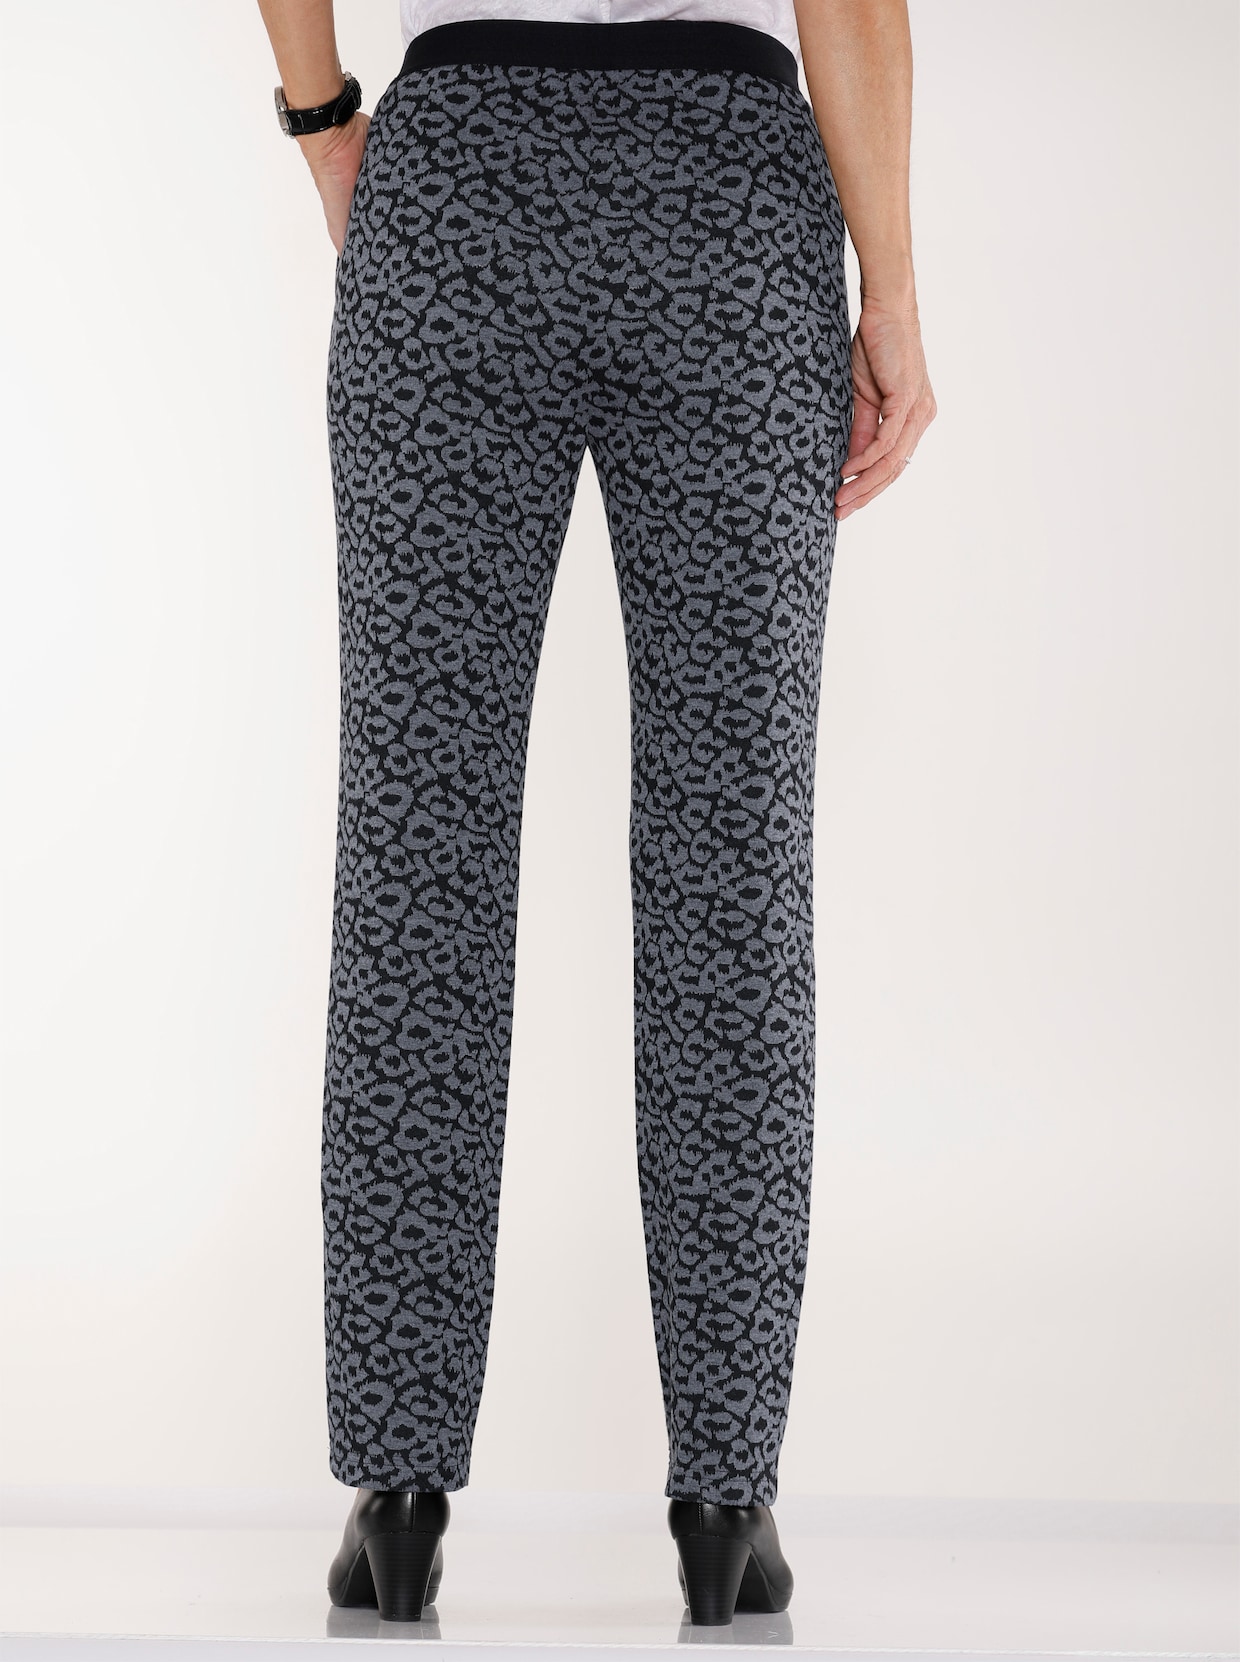 Pohodlné kalhoty - černá-šedá leopardí